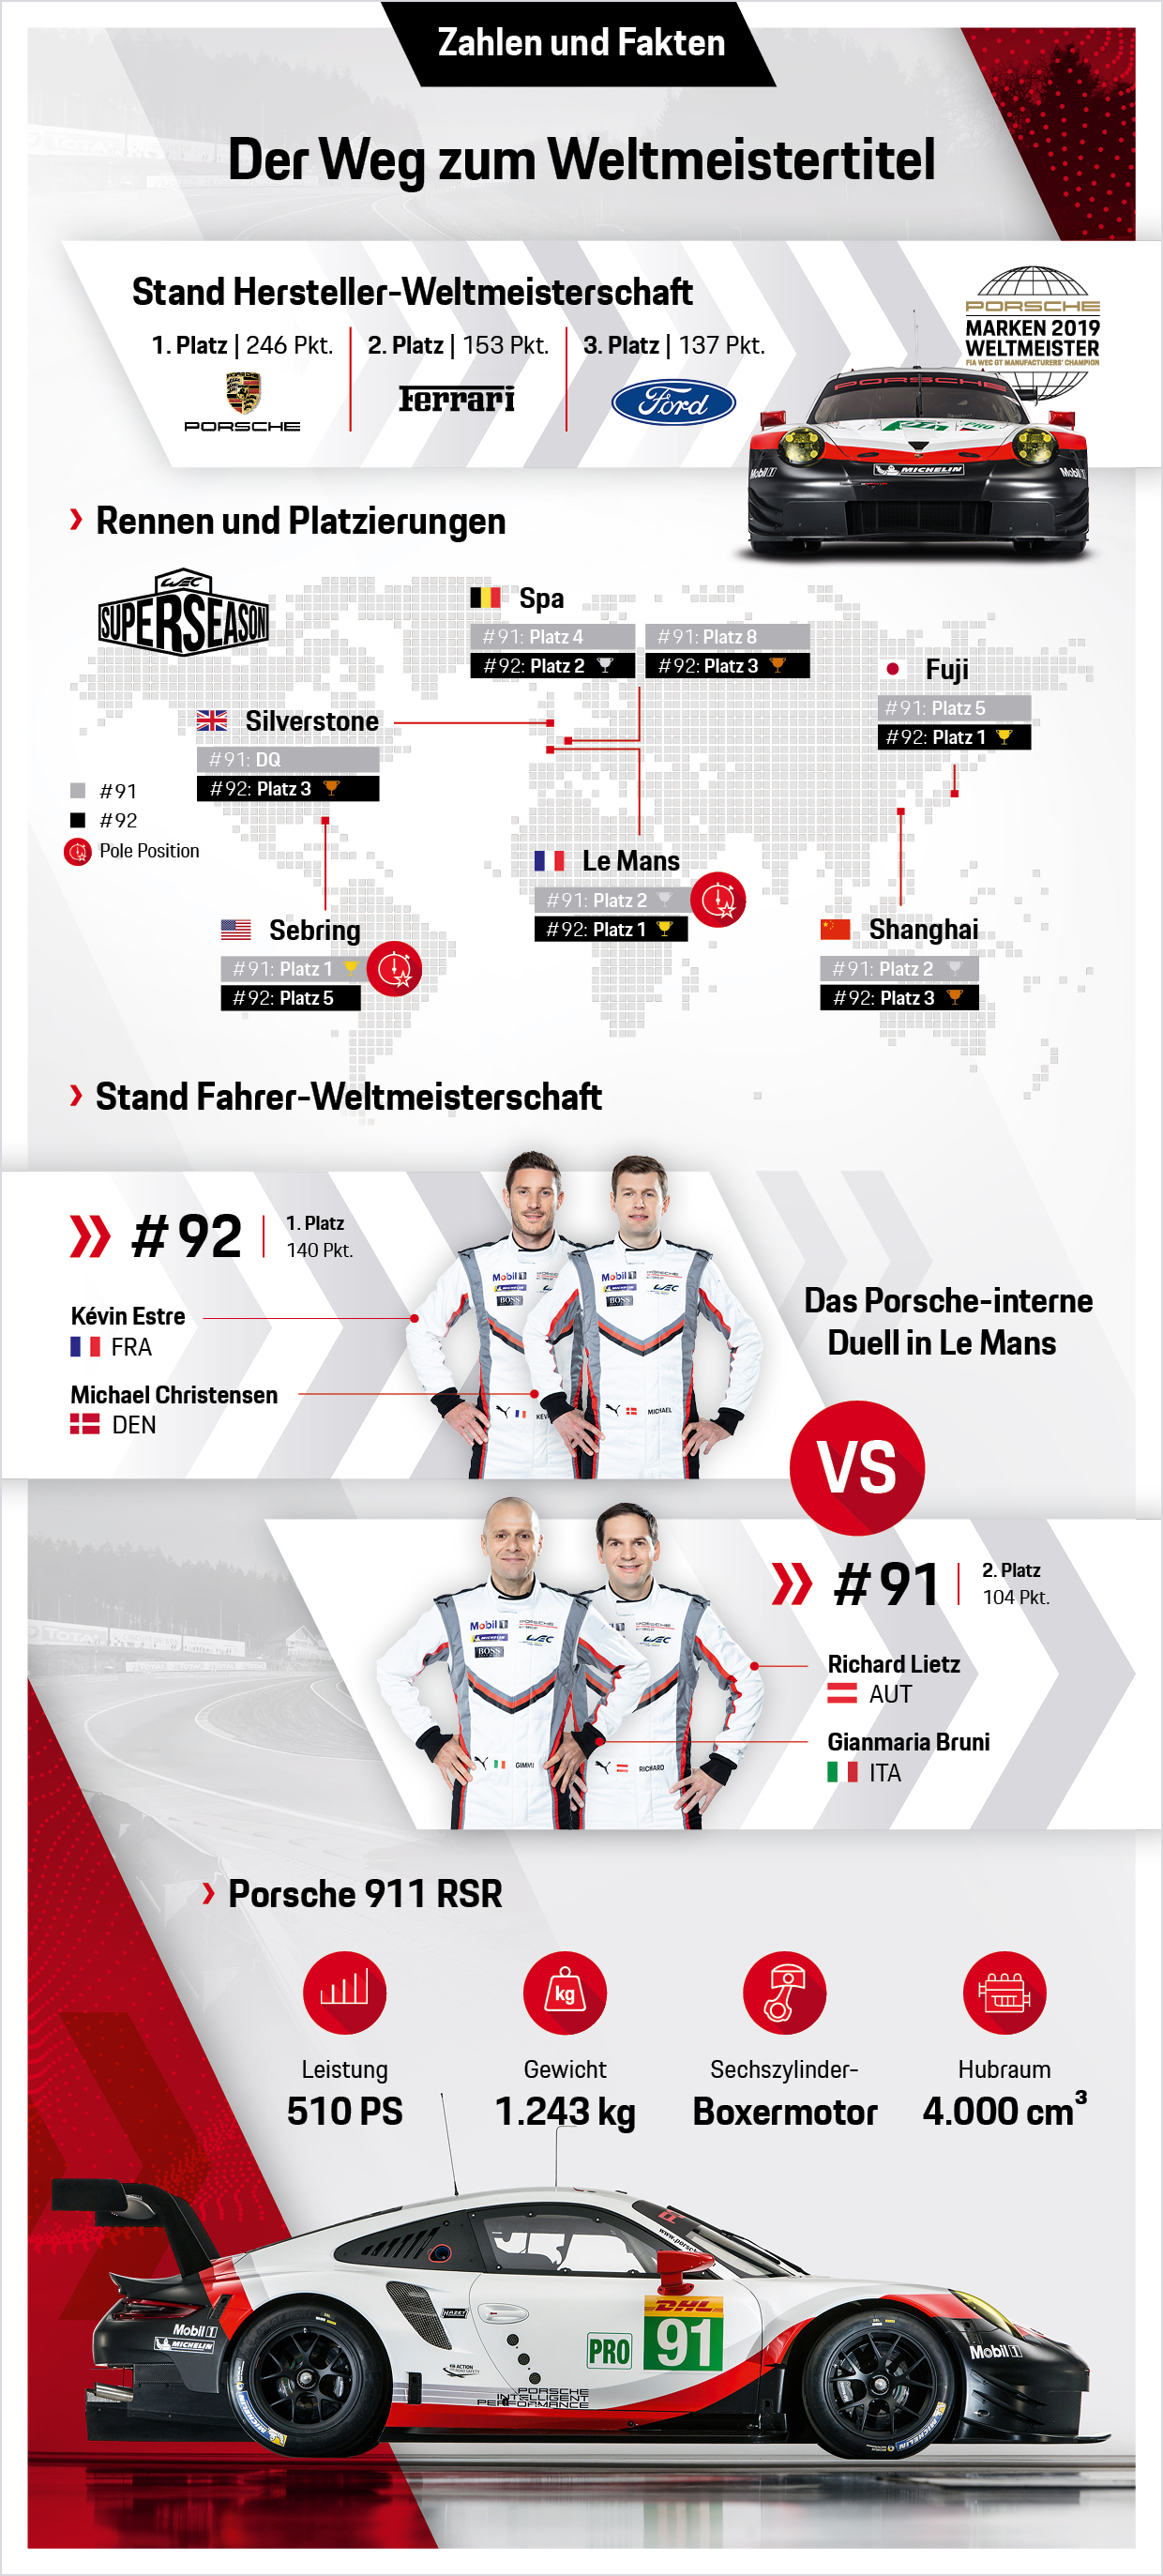 WEC: Der Weg zum Weltmeister, Infografik, 2019, Porsche AG